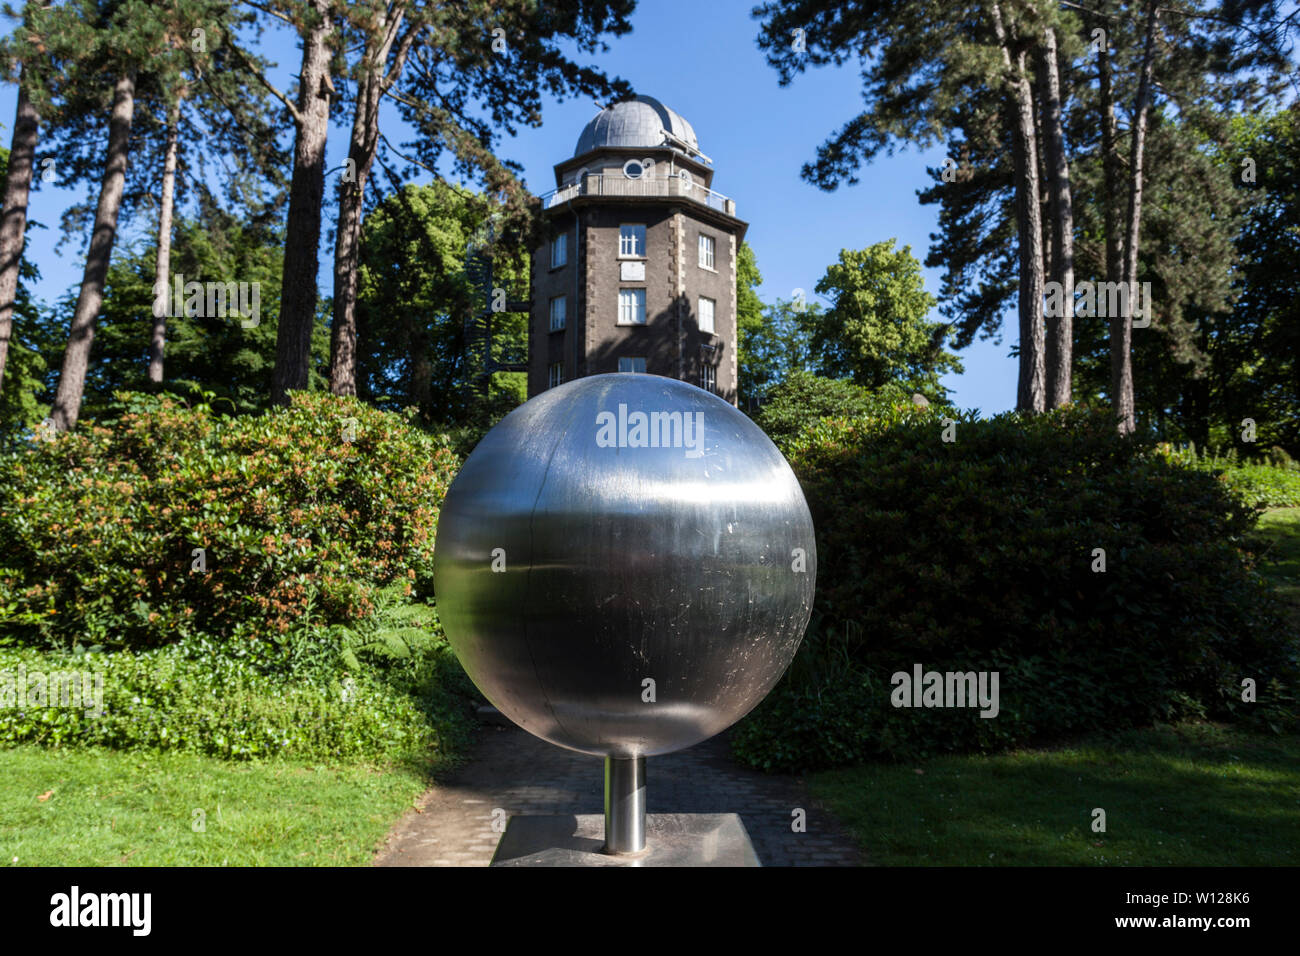 Westfalische Volkssternwarte Westfalia - observatorio público en ciudad jardín de Recklinghausen, al frente de ella un modelo del sol a escala 1:3 billones Foto de stock